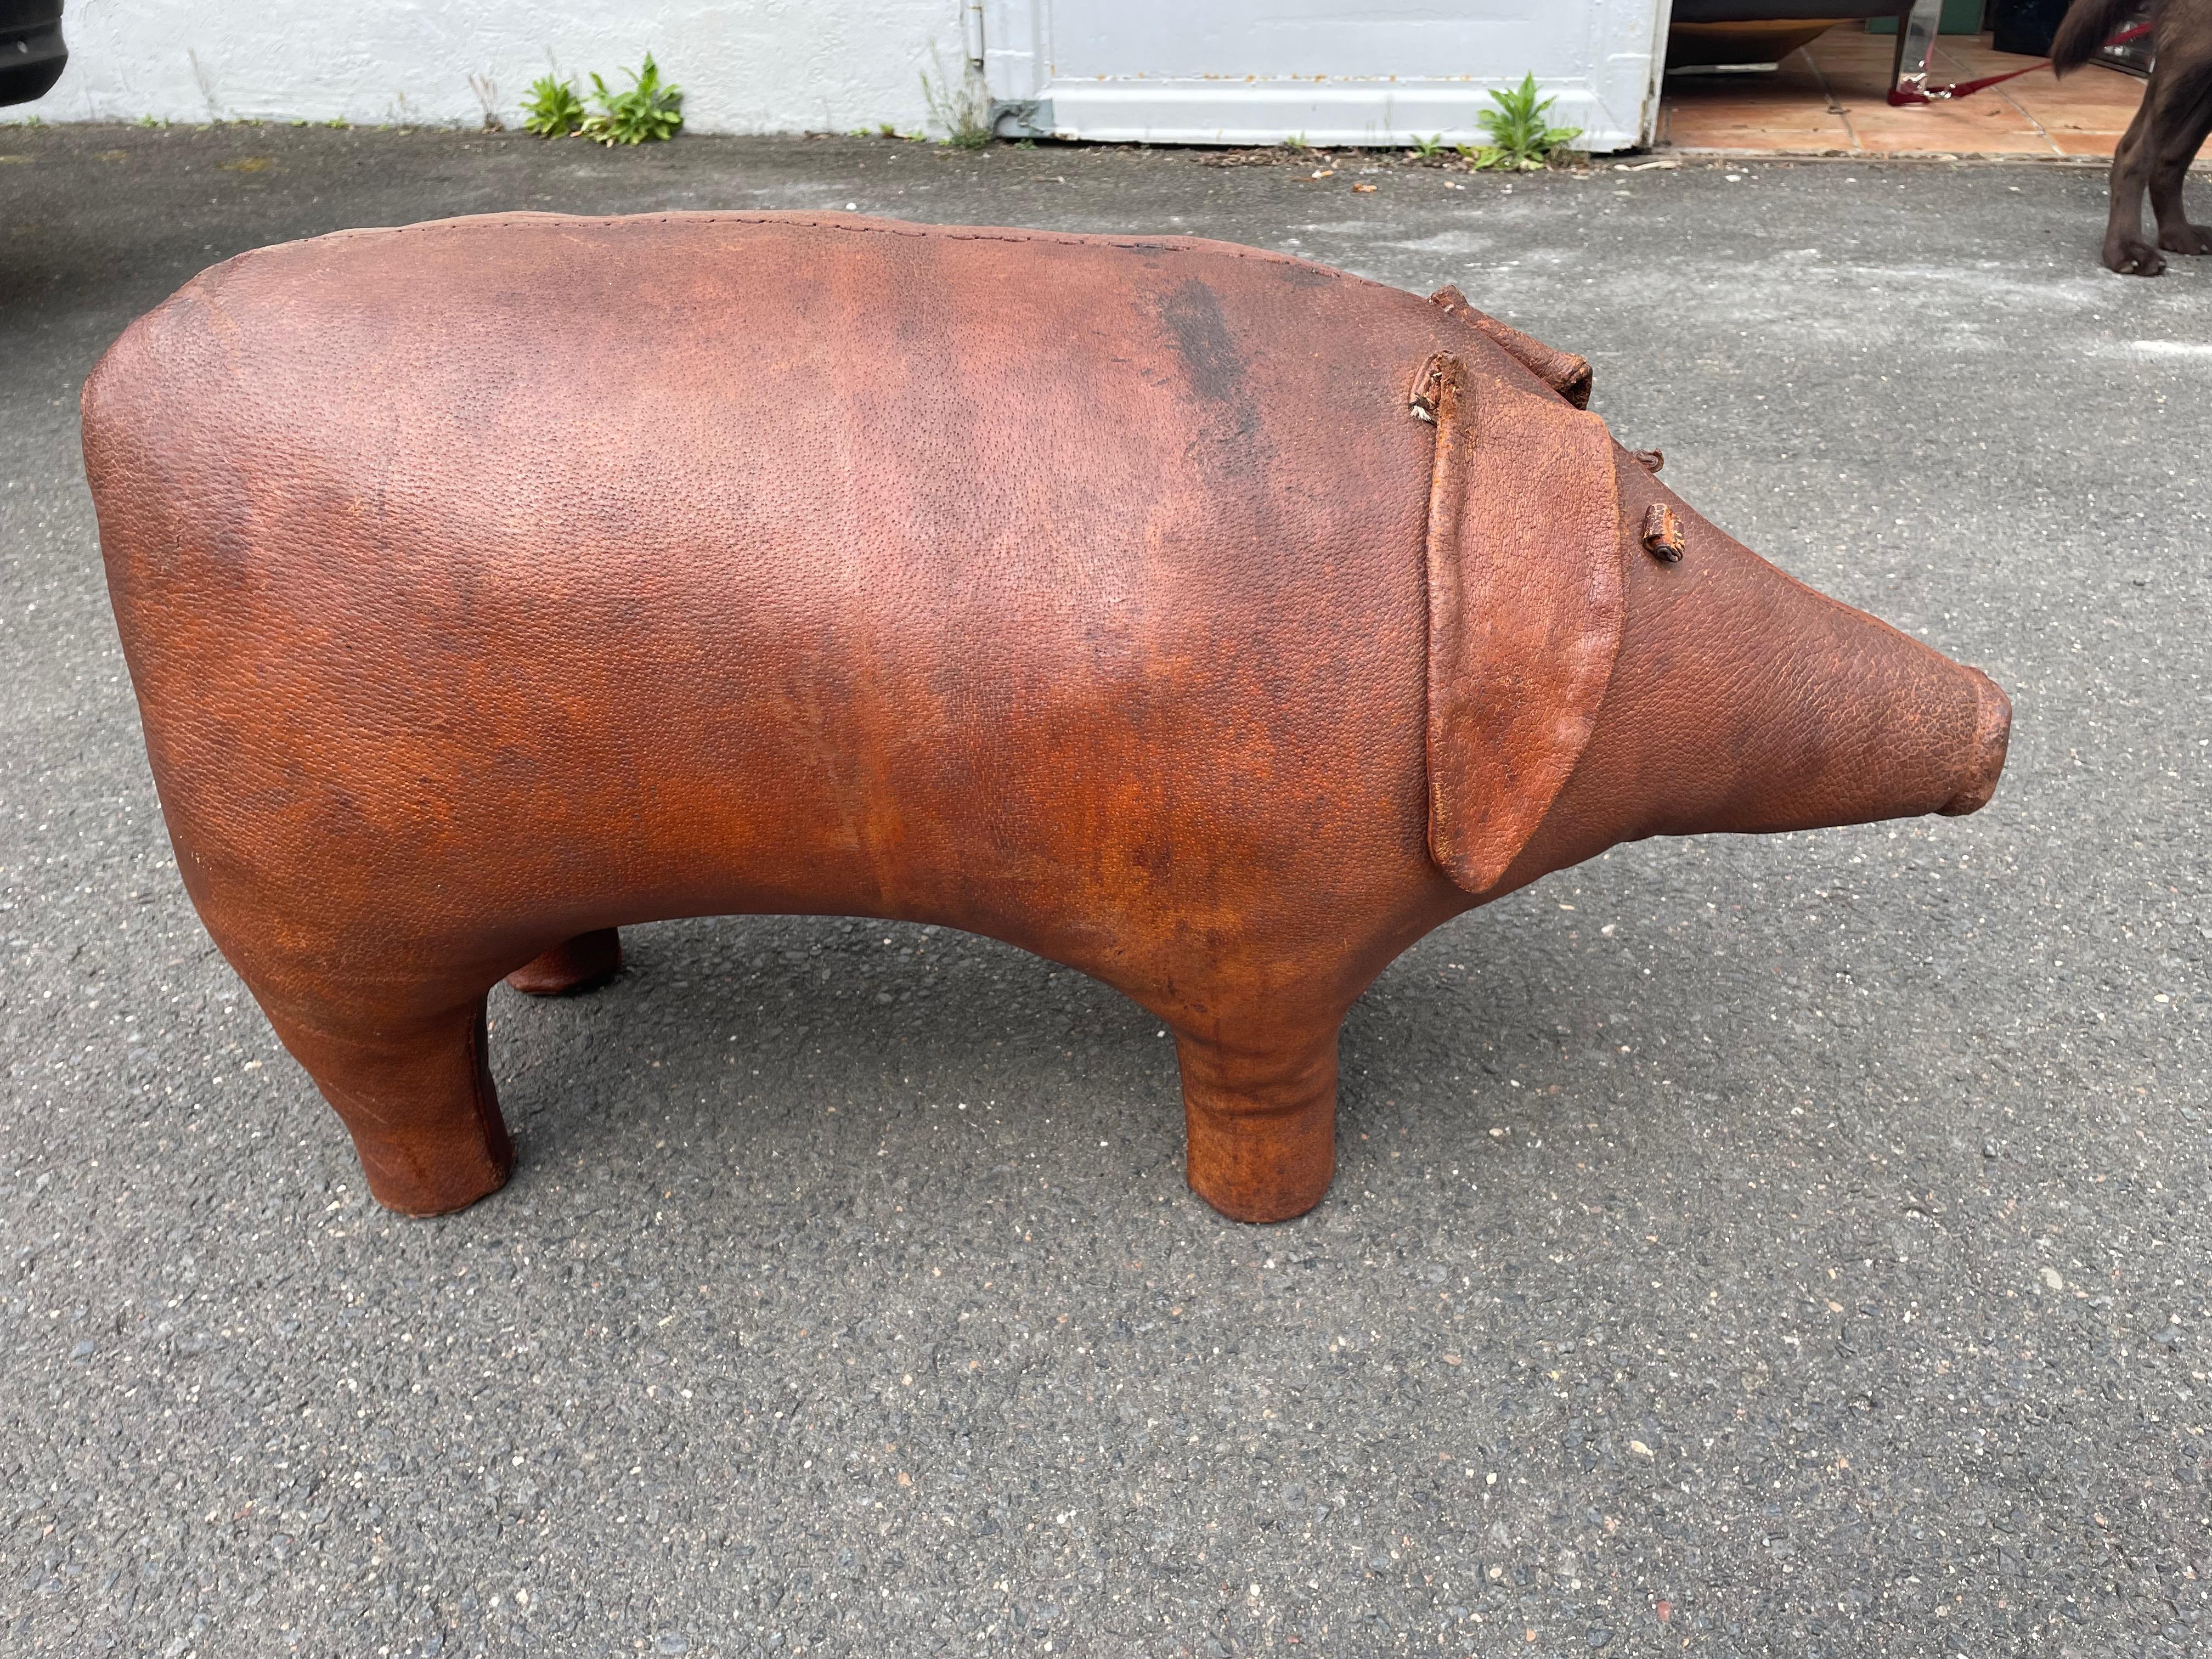 Großer Fußhocker „PIG“ von Dimitri Omersa. 1960er Jahre. Abercrombie & Fitch.
Das Schwein war eines der ersten Modelle von Omersa 
Das große Schwein ist mit Holzwolle gefüllt und mit Leder überzogen.
Das Lederschwein wurde professionell gereinigt